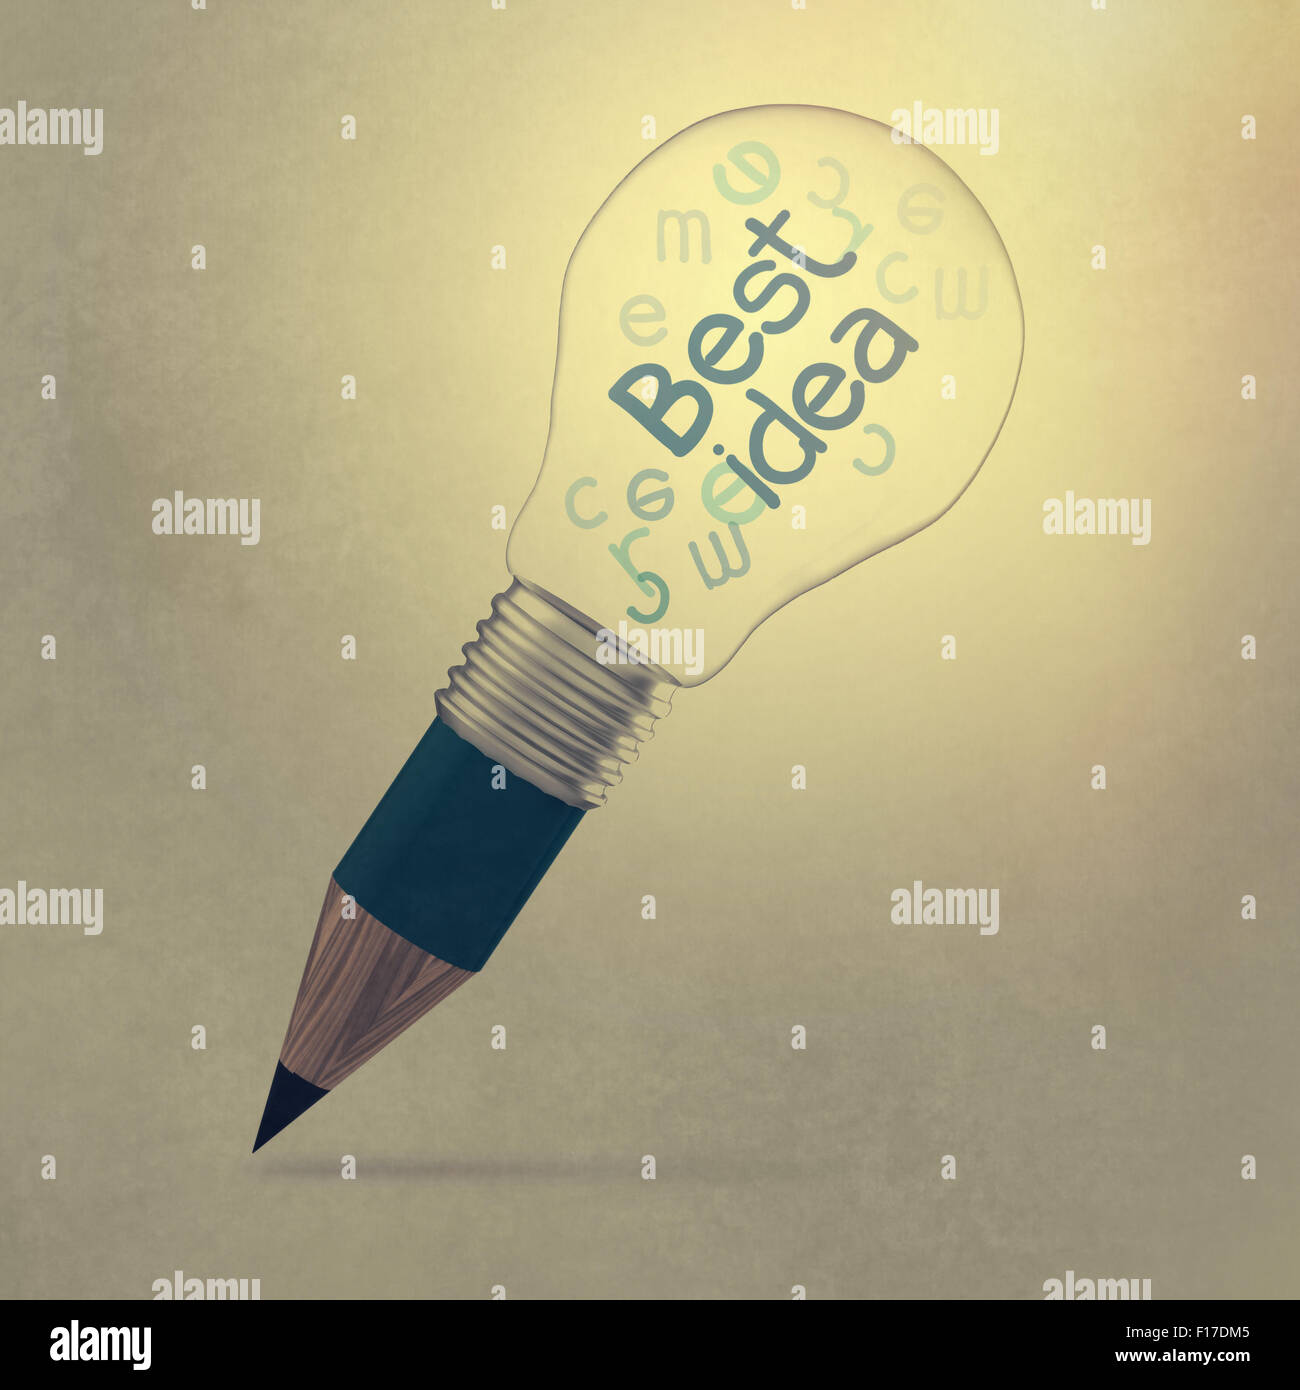 La meilleure idée créative concept créatif ampoule crayon Banque D'Images